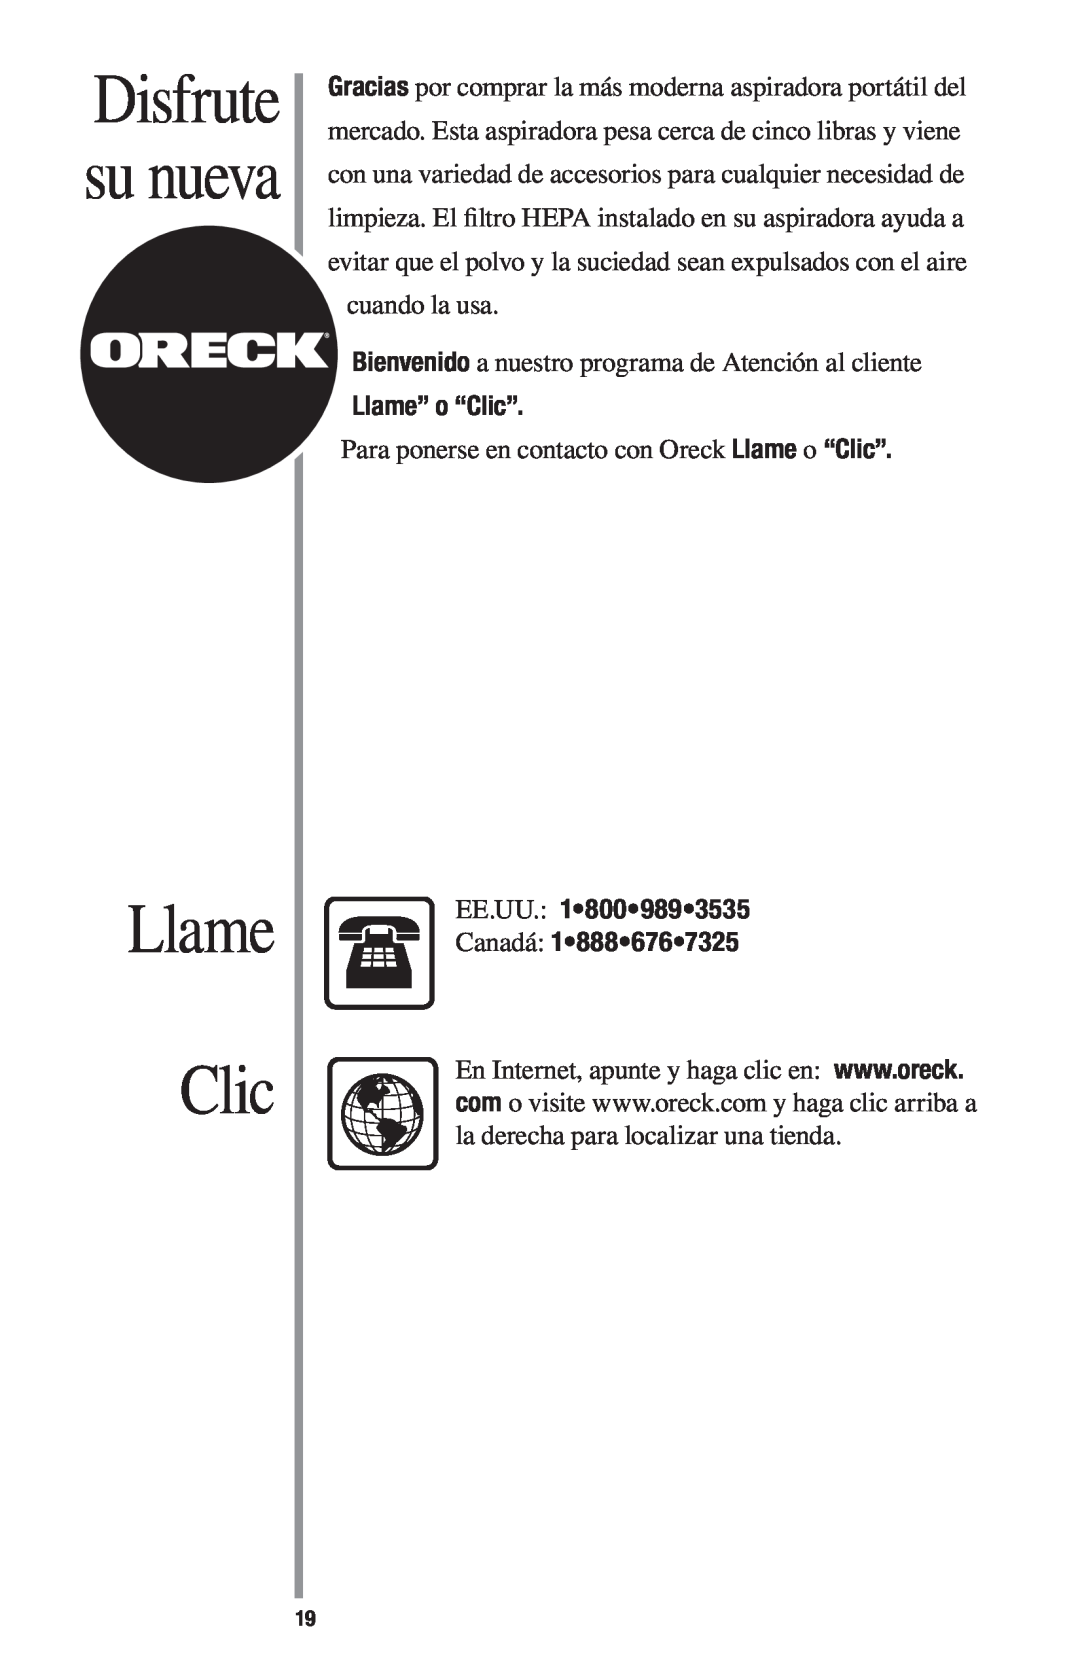 Oreck 1600 manual Llame Clic, Disfrute su nueva, Llame” o “Clic”, EE.UU Canadá 